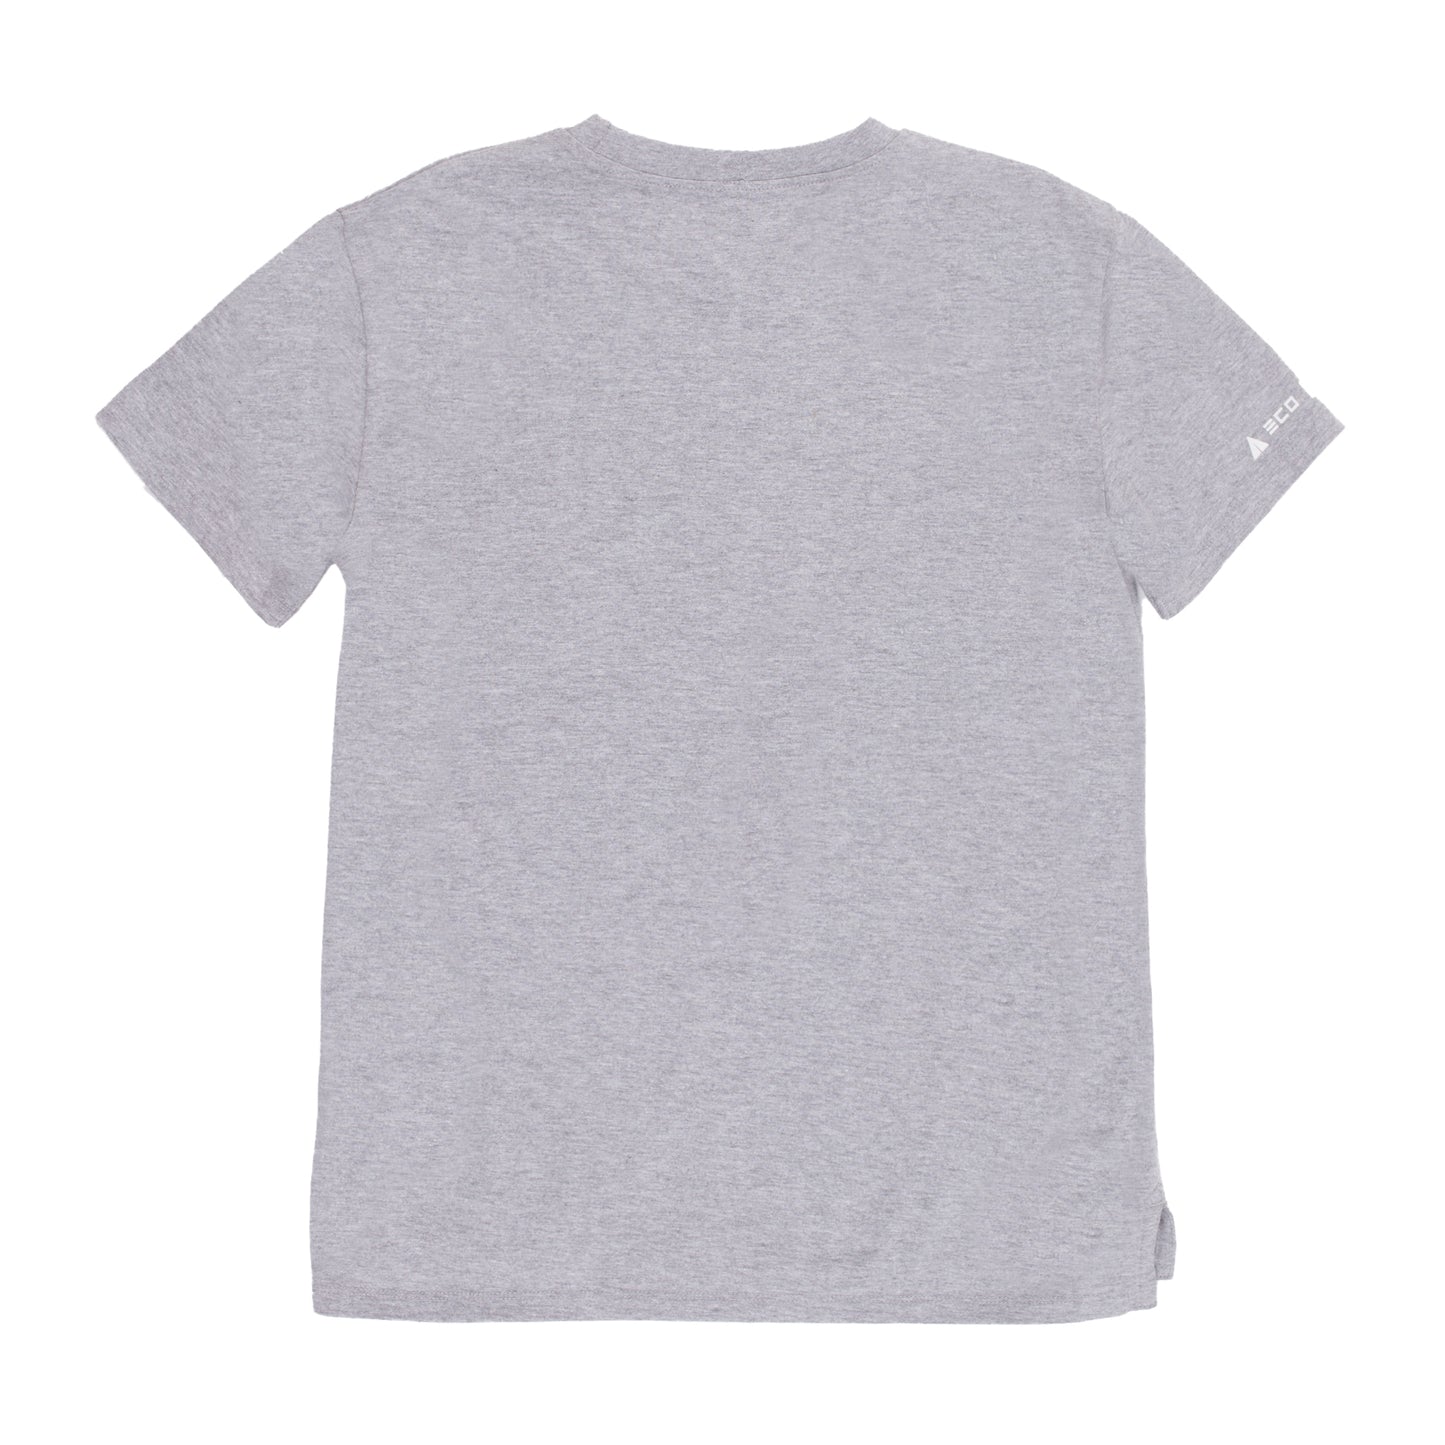 T-shirt - S22L51-04 - Détente - Gris mix - 4 à 16 ans